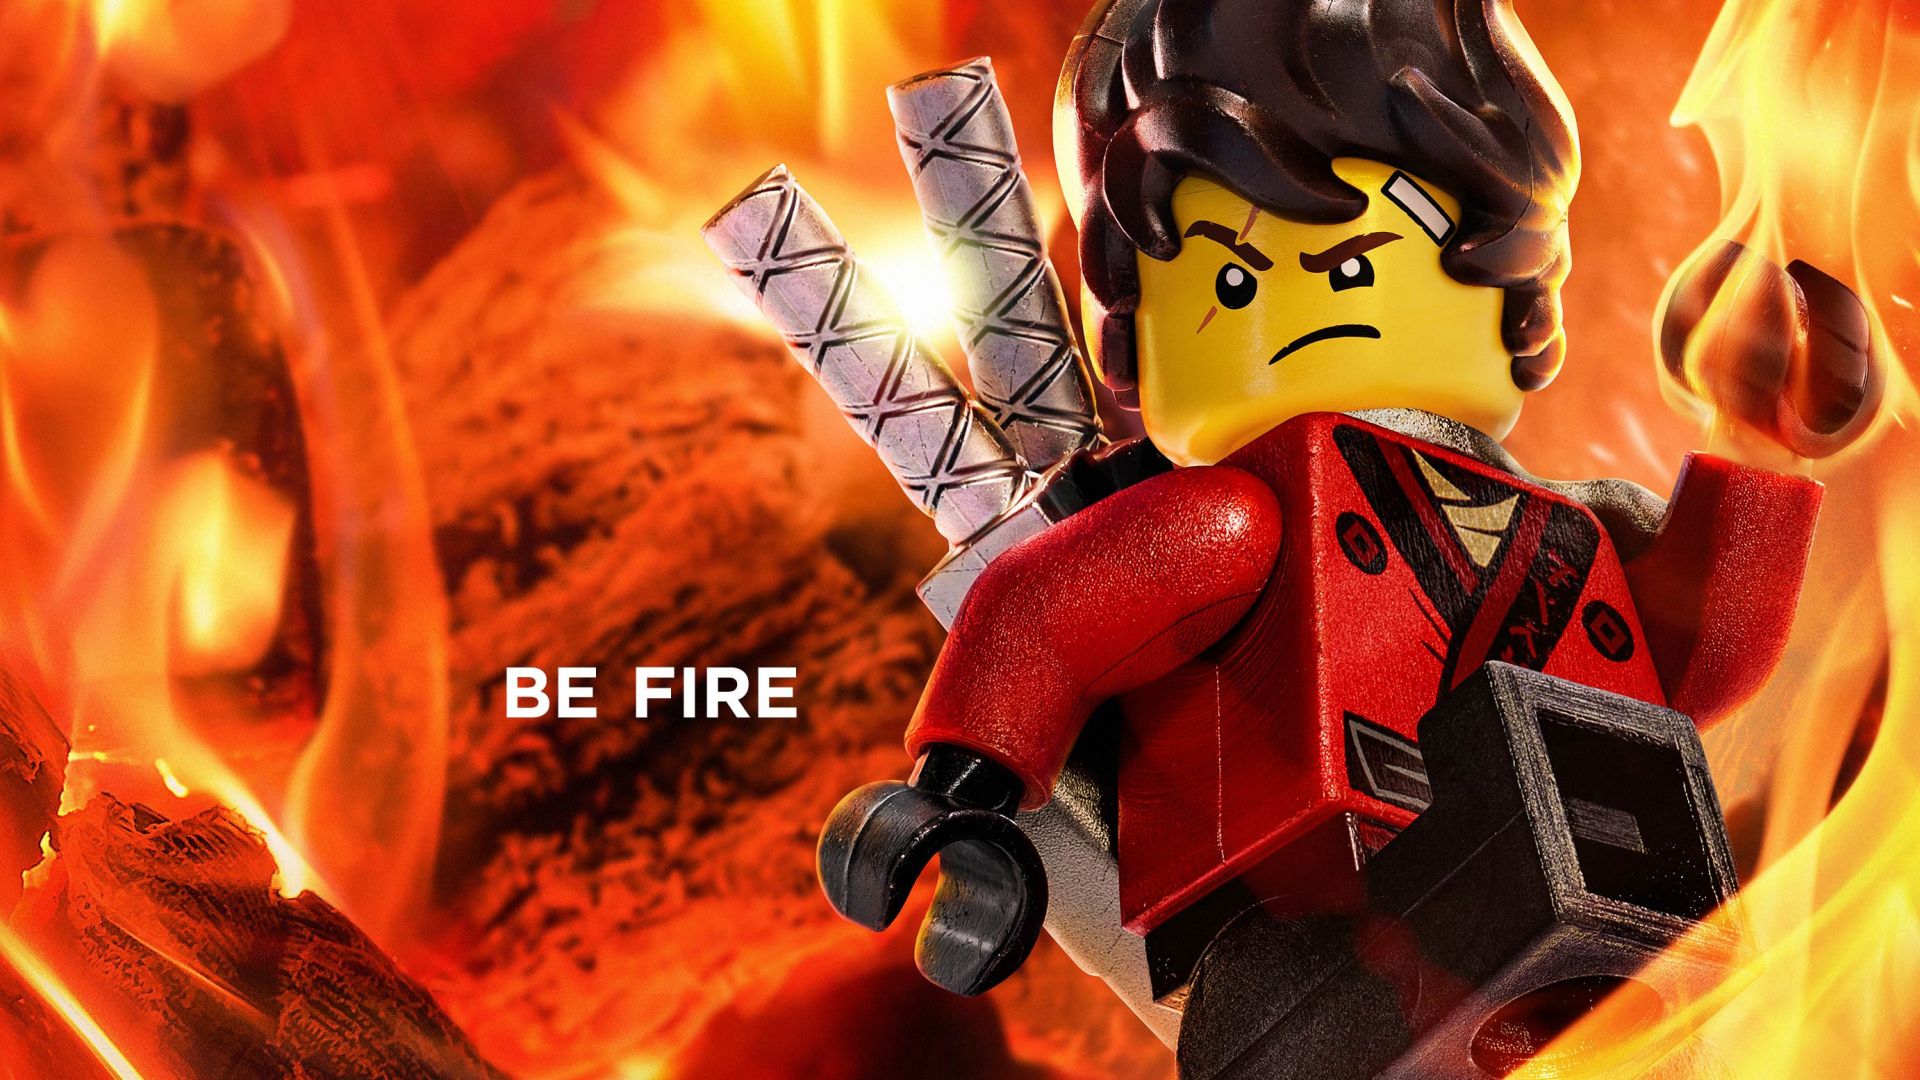 The LEGO Ninjago Movie, Be Fire, 4k (horizontal)